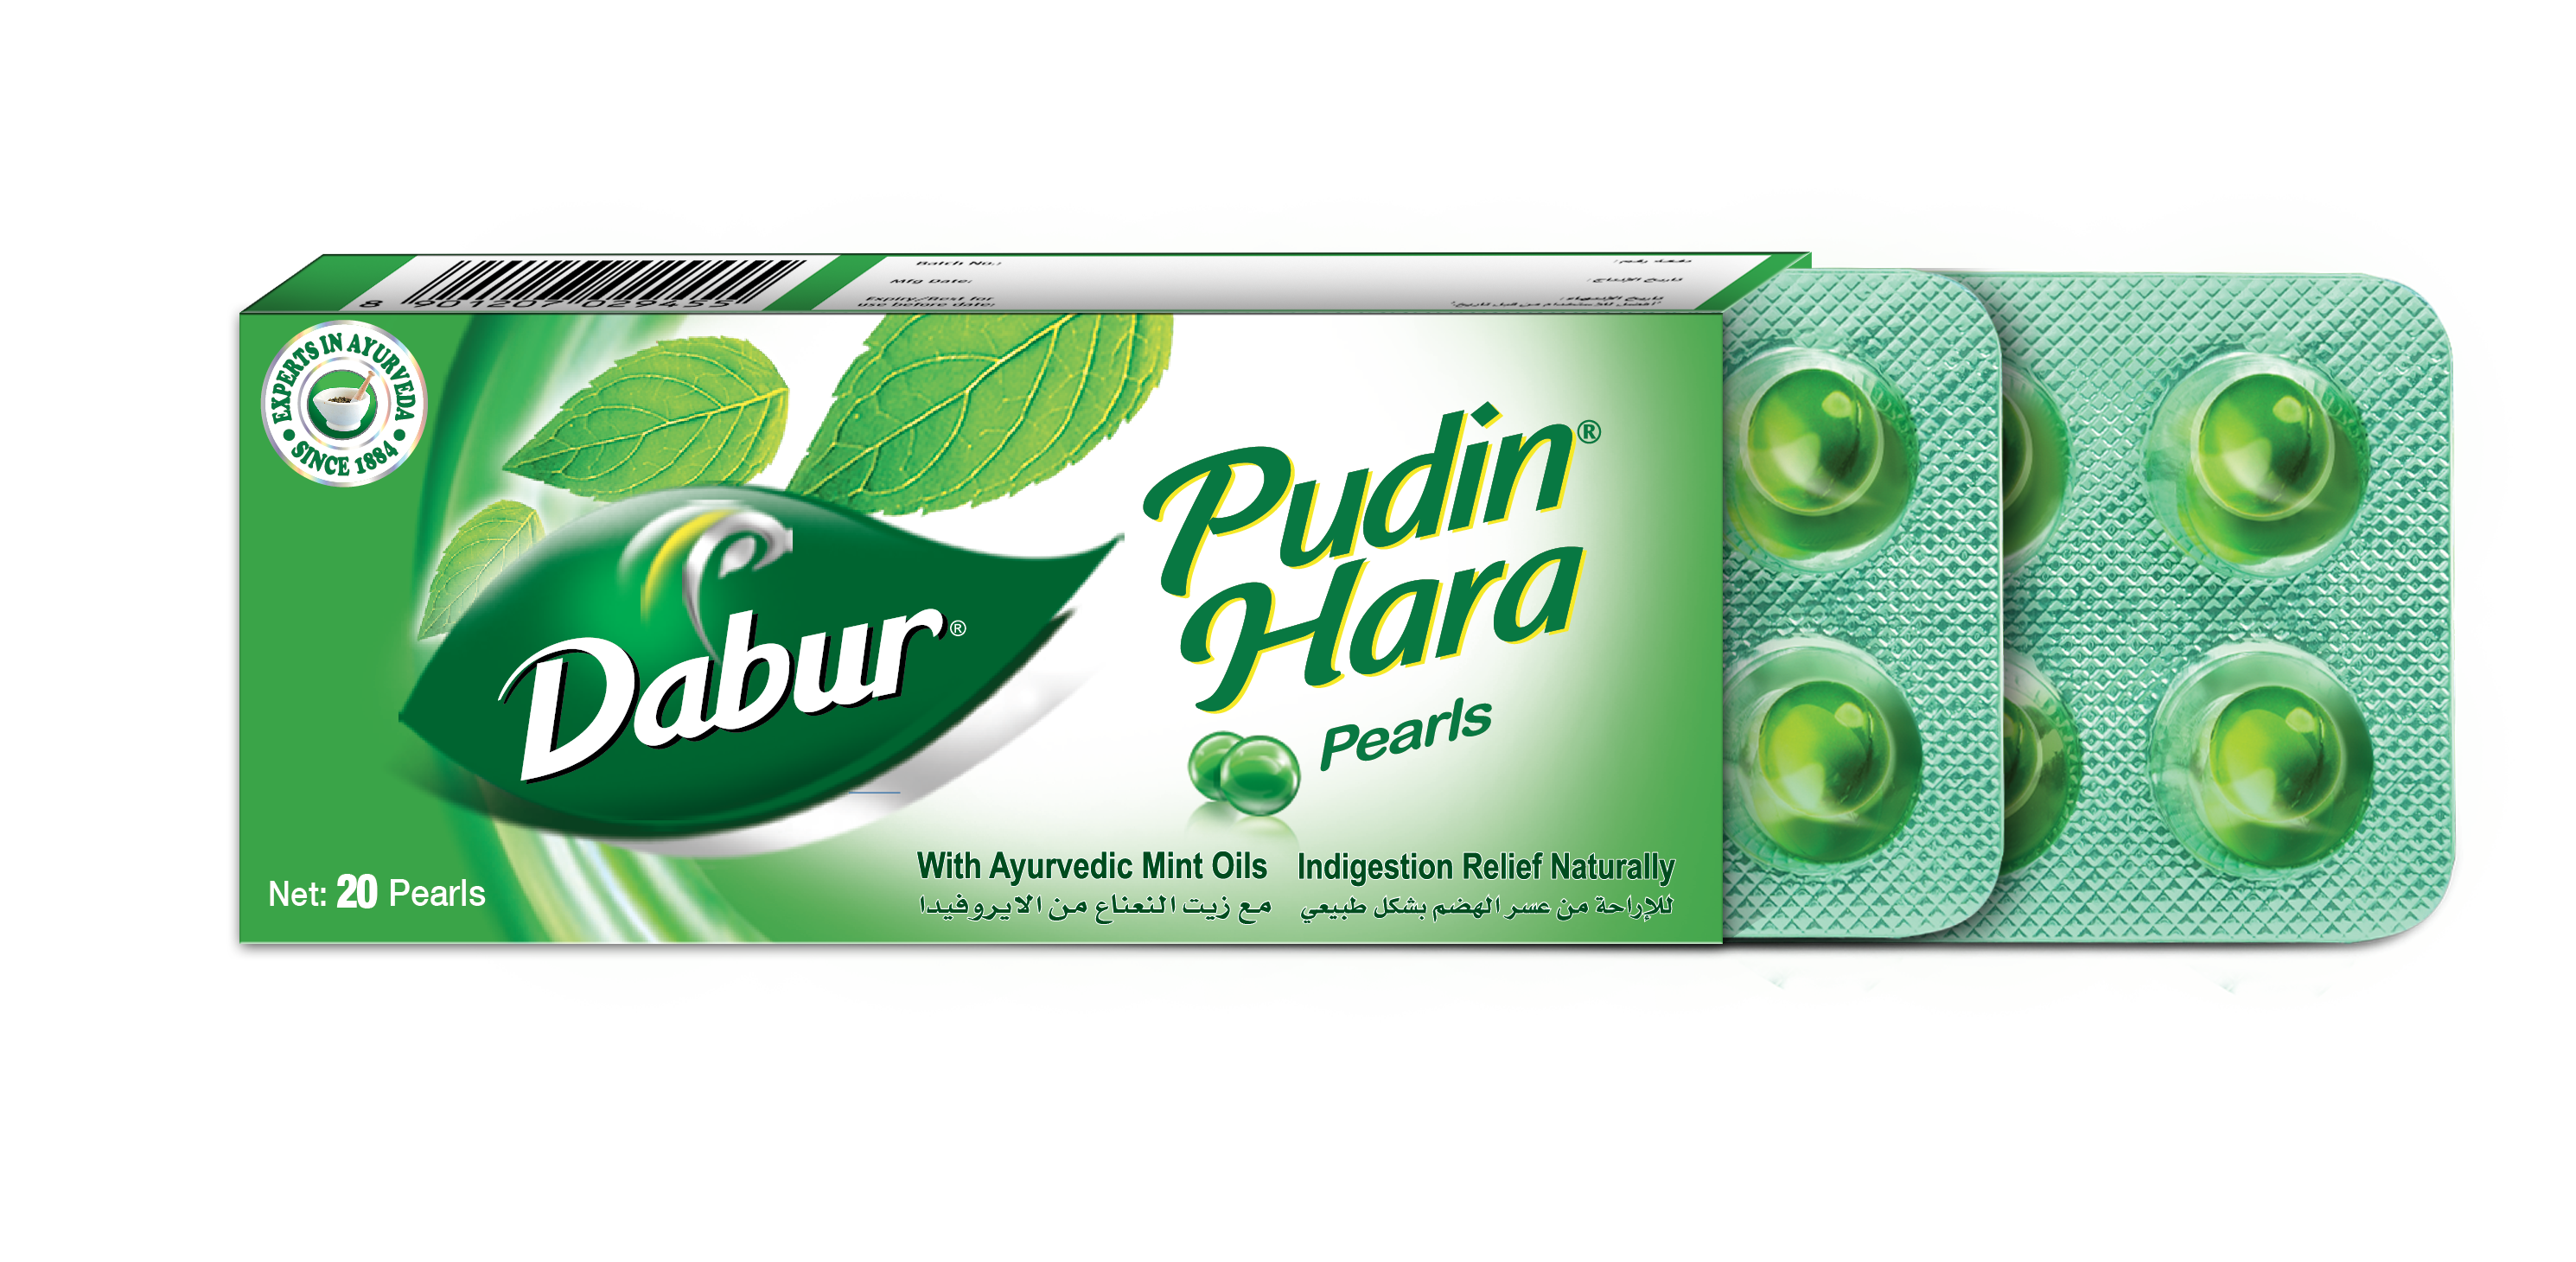 Dabur Pudin Hara Pearls, Pack of 20 Pearls